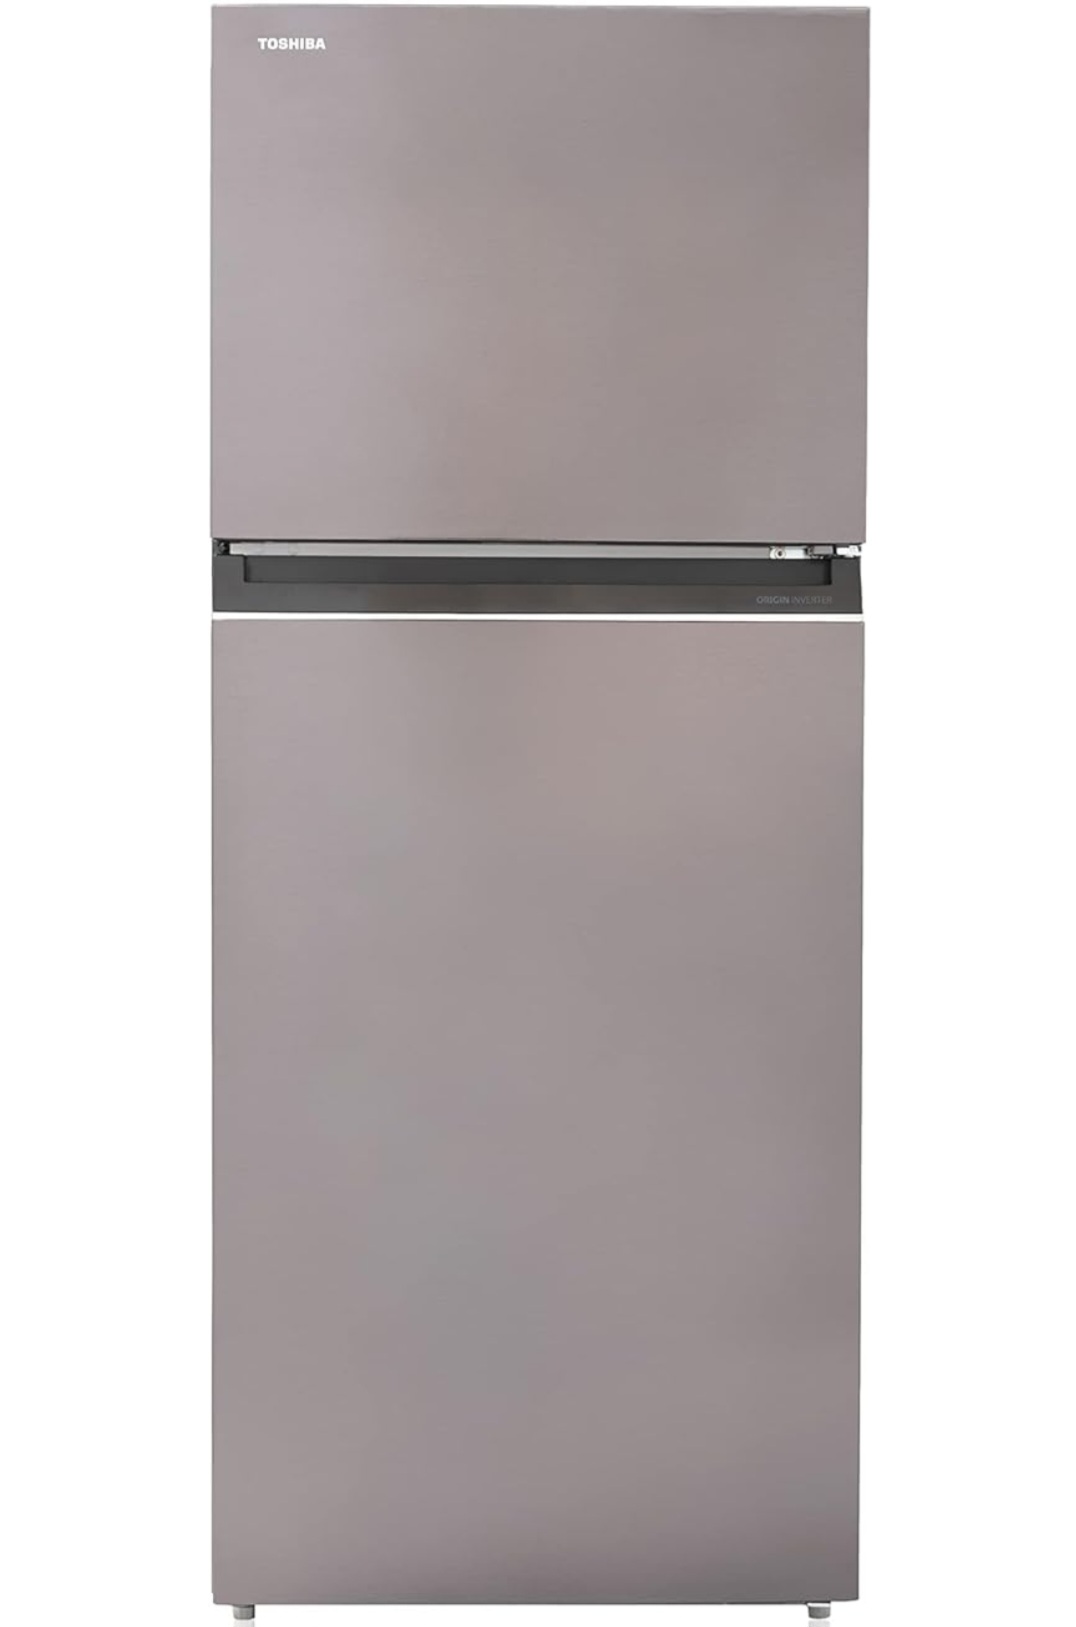 Toshiba refrigerator, 411 litres